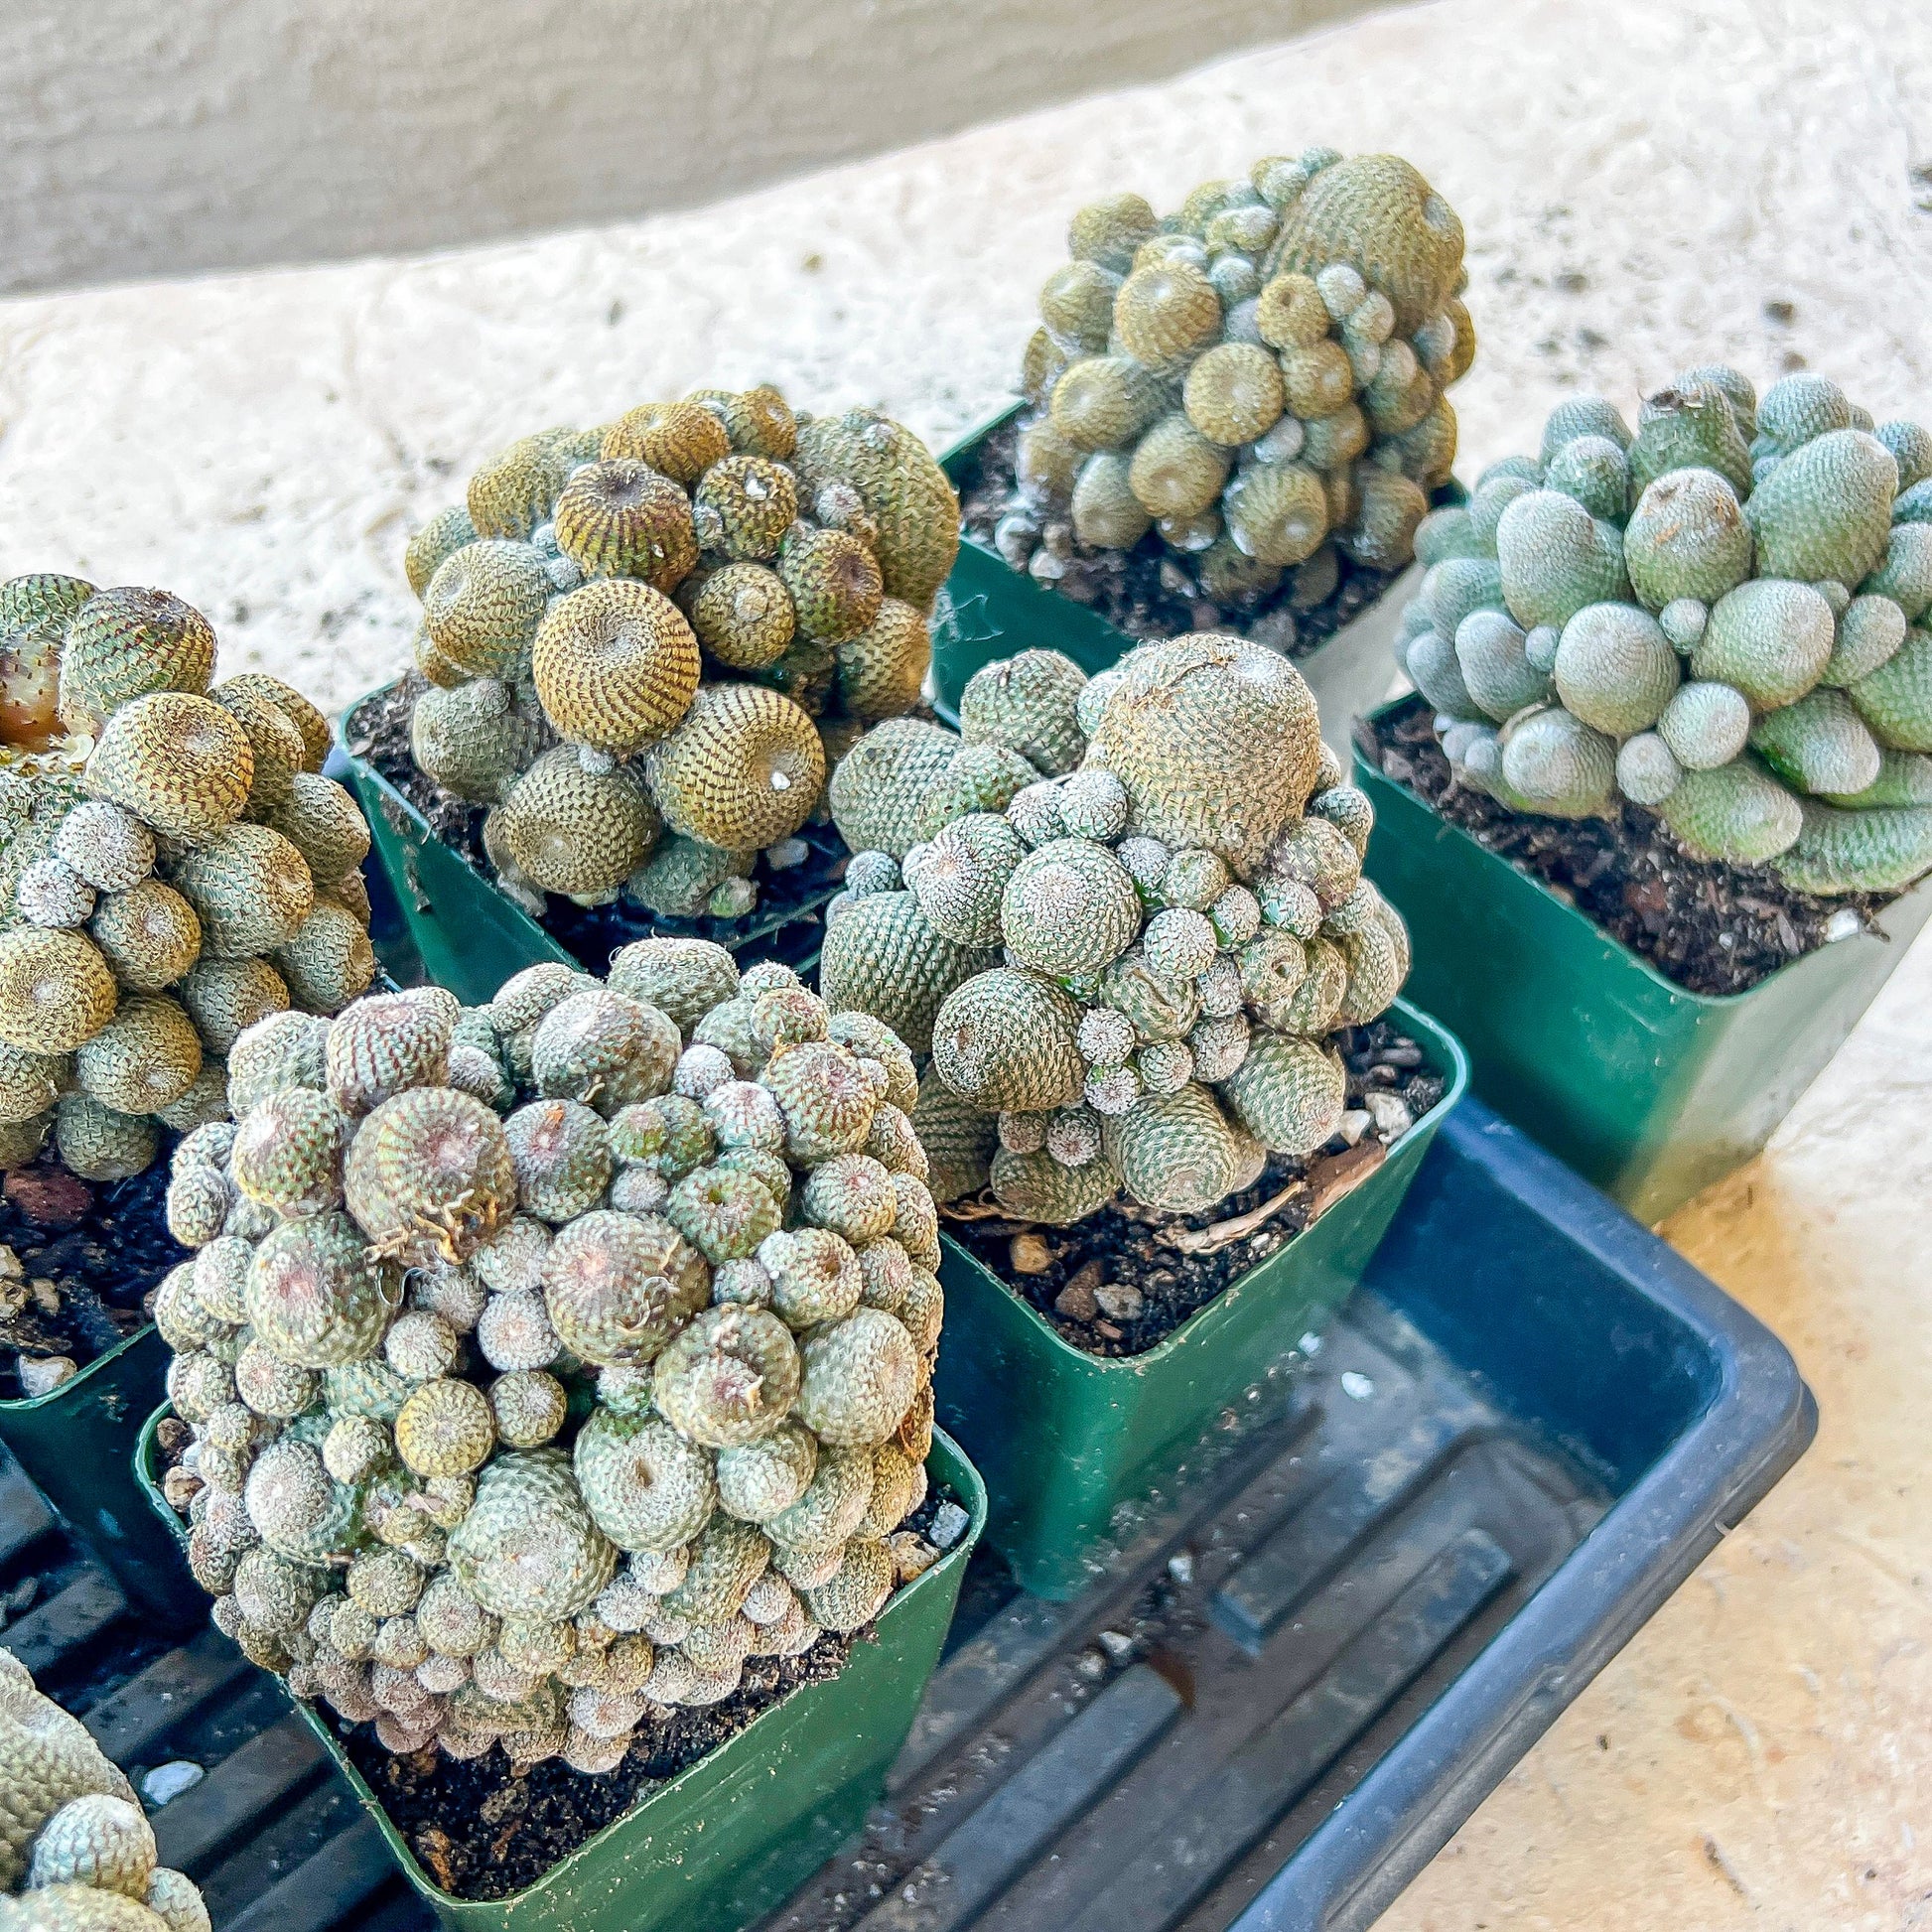 Rebutia Heliosa Cluster (V3) | Clumping Cactus | Rare Cactus | Very Rare Import